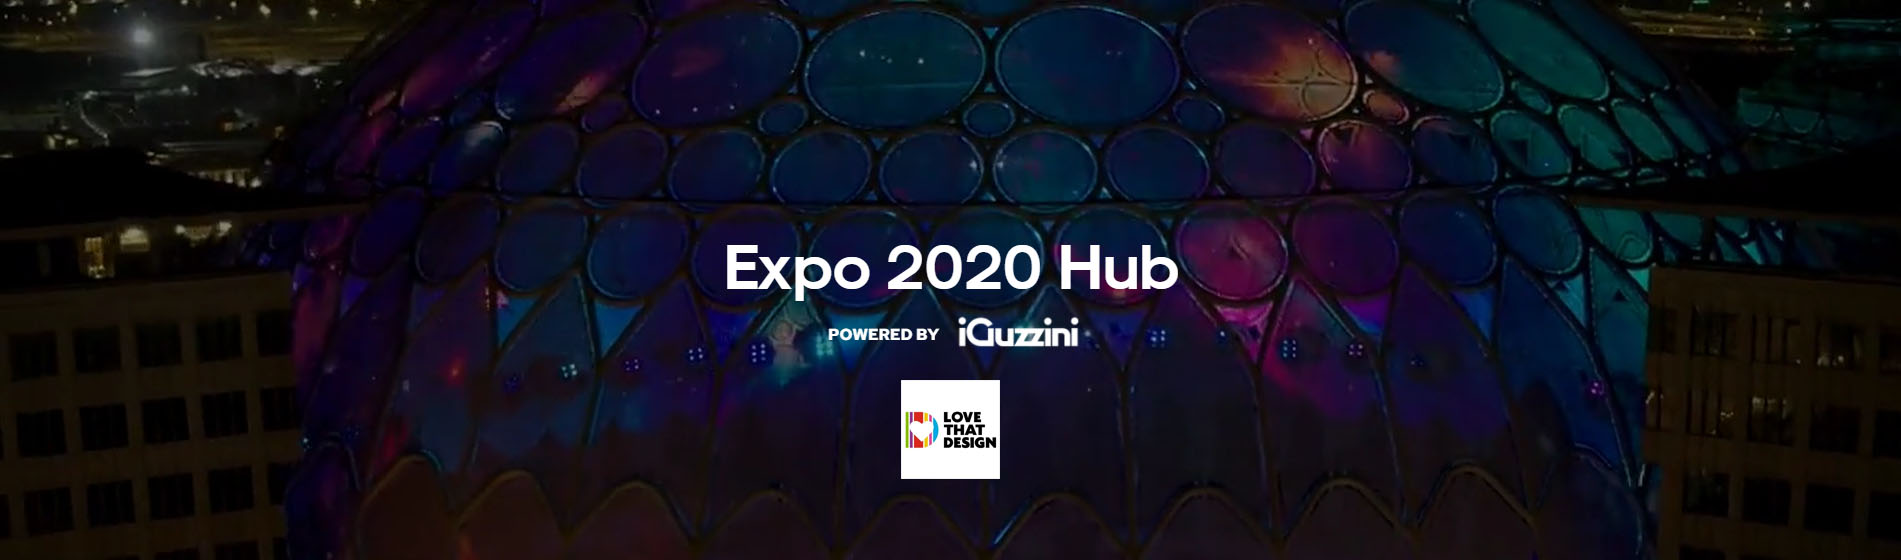 Expo Dubai 2020 continua con iGuzzini